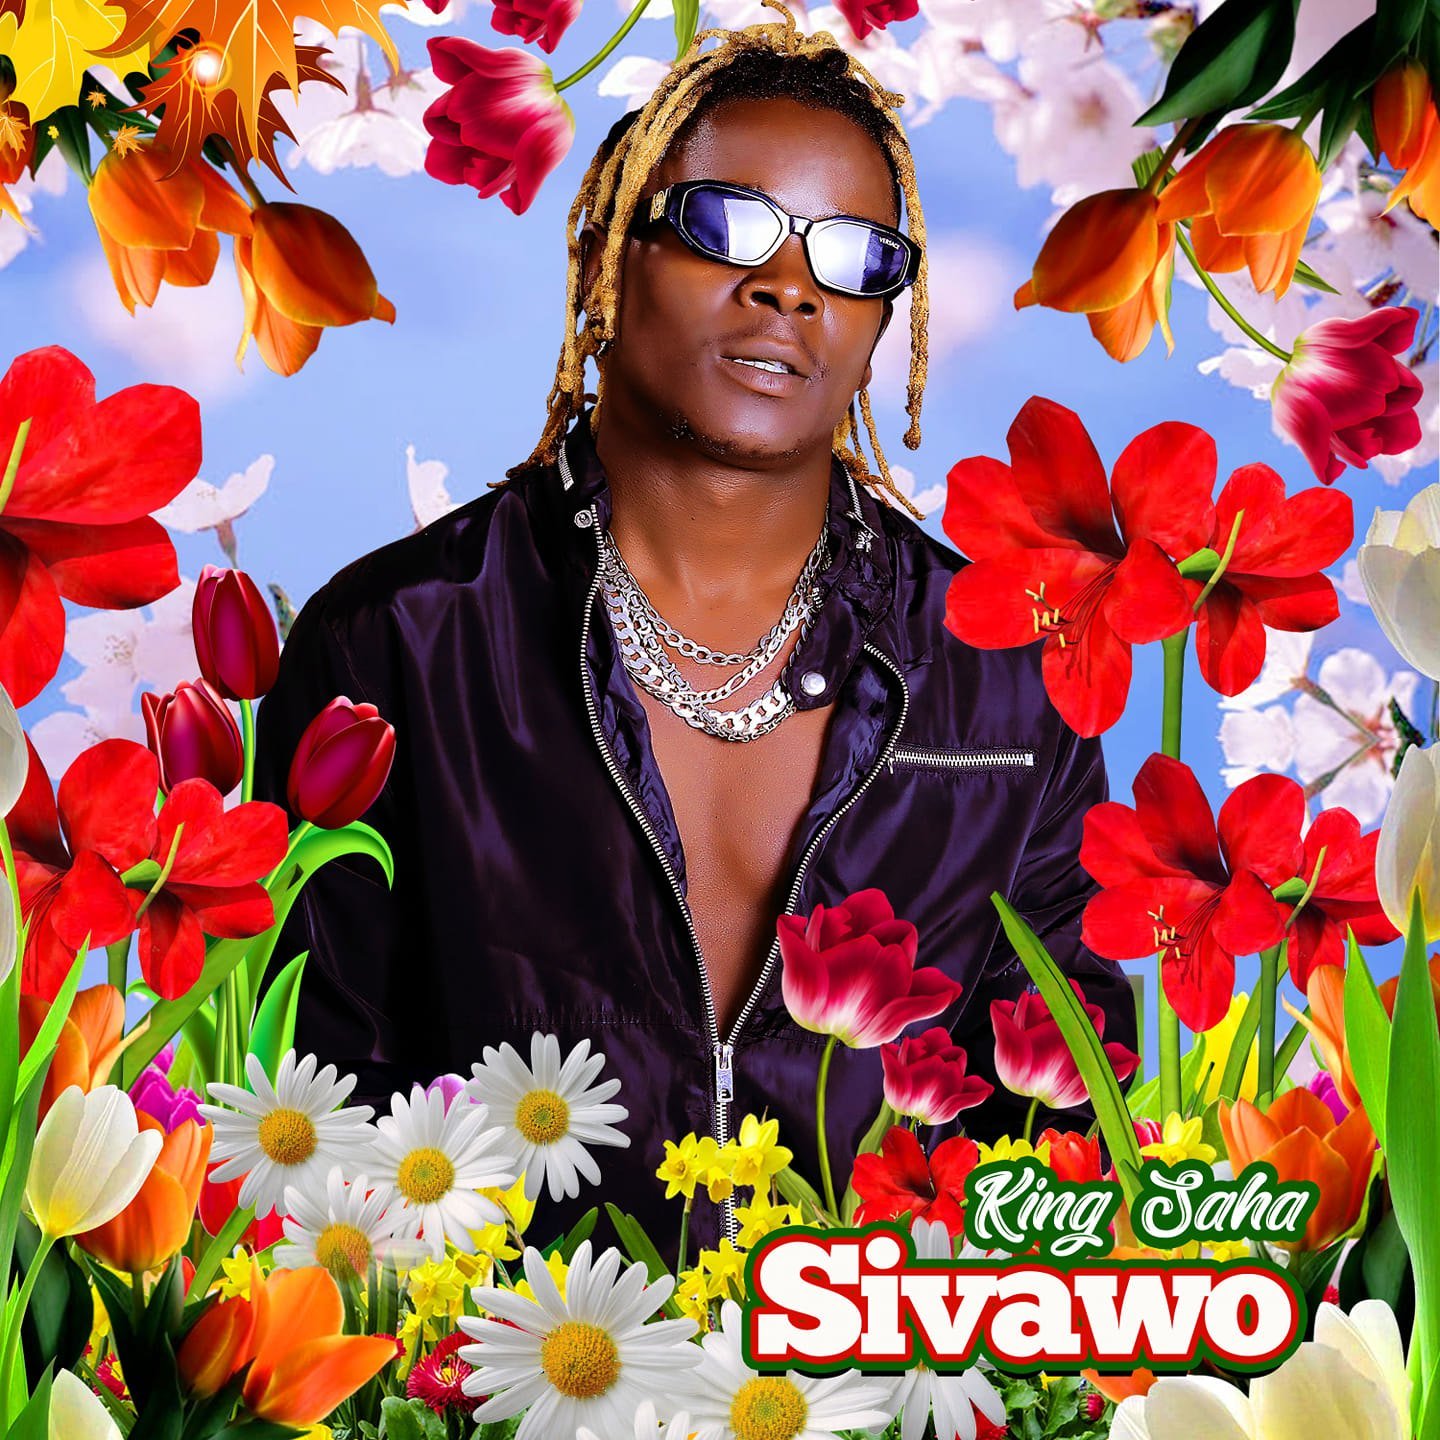 Sivaawo By King Saha | Free MP3 download on ugamusic.ug